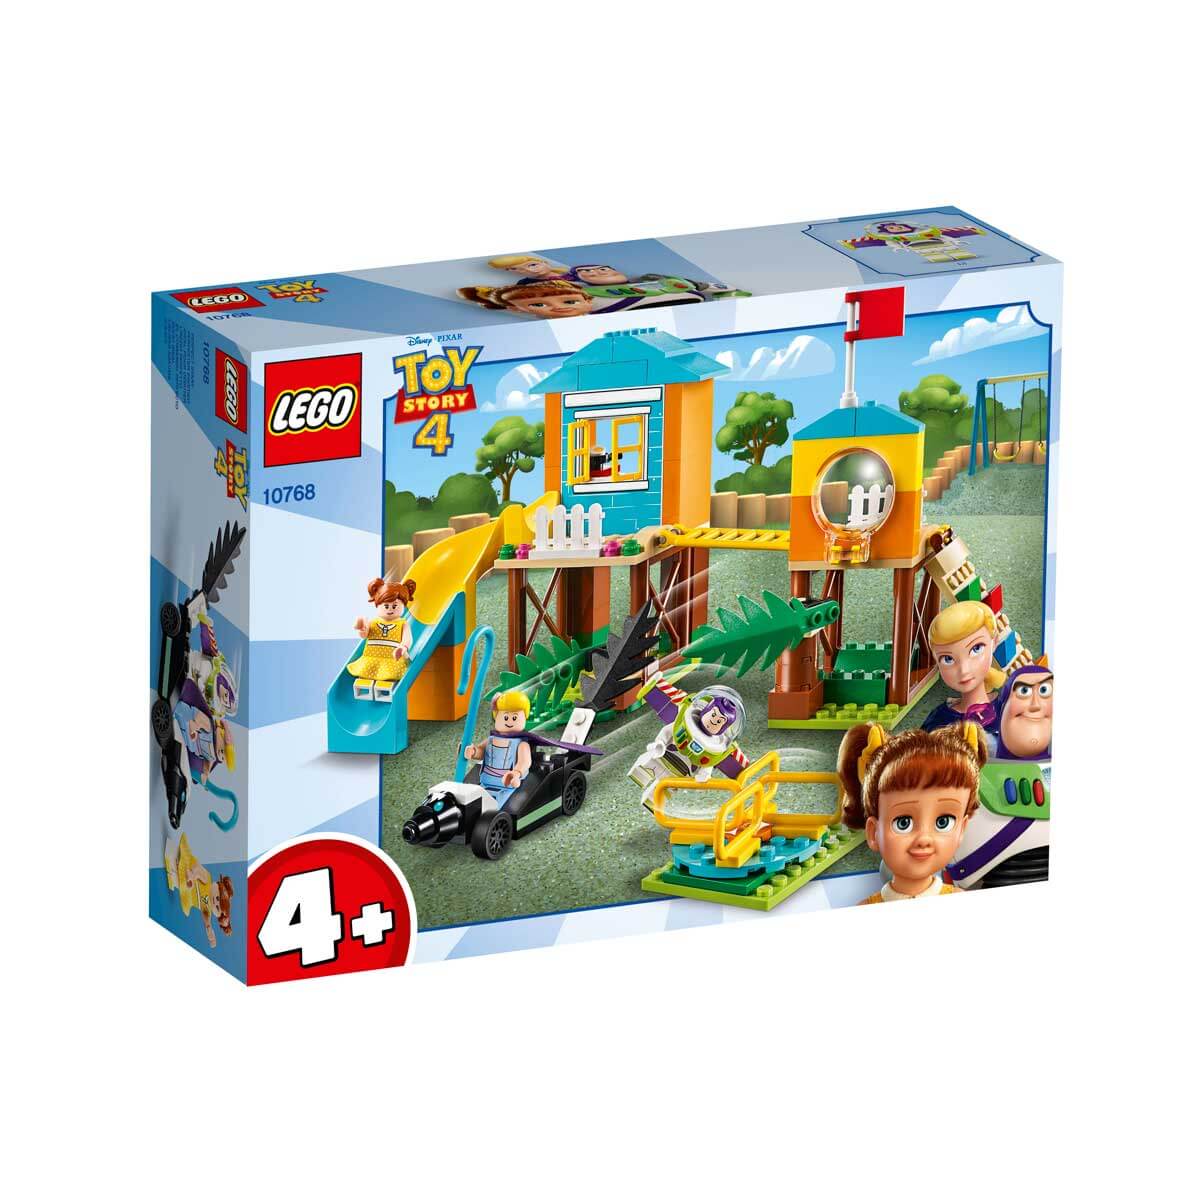 Buzz &amp; Porzellinchens Spiel- platzabenteuer, Lego Toy Story, 139 Teile, 4 J.